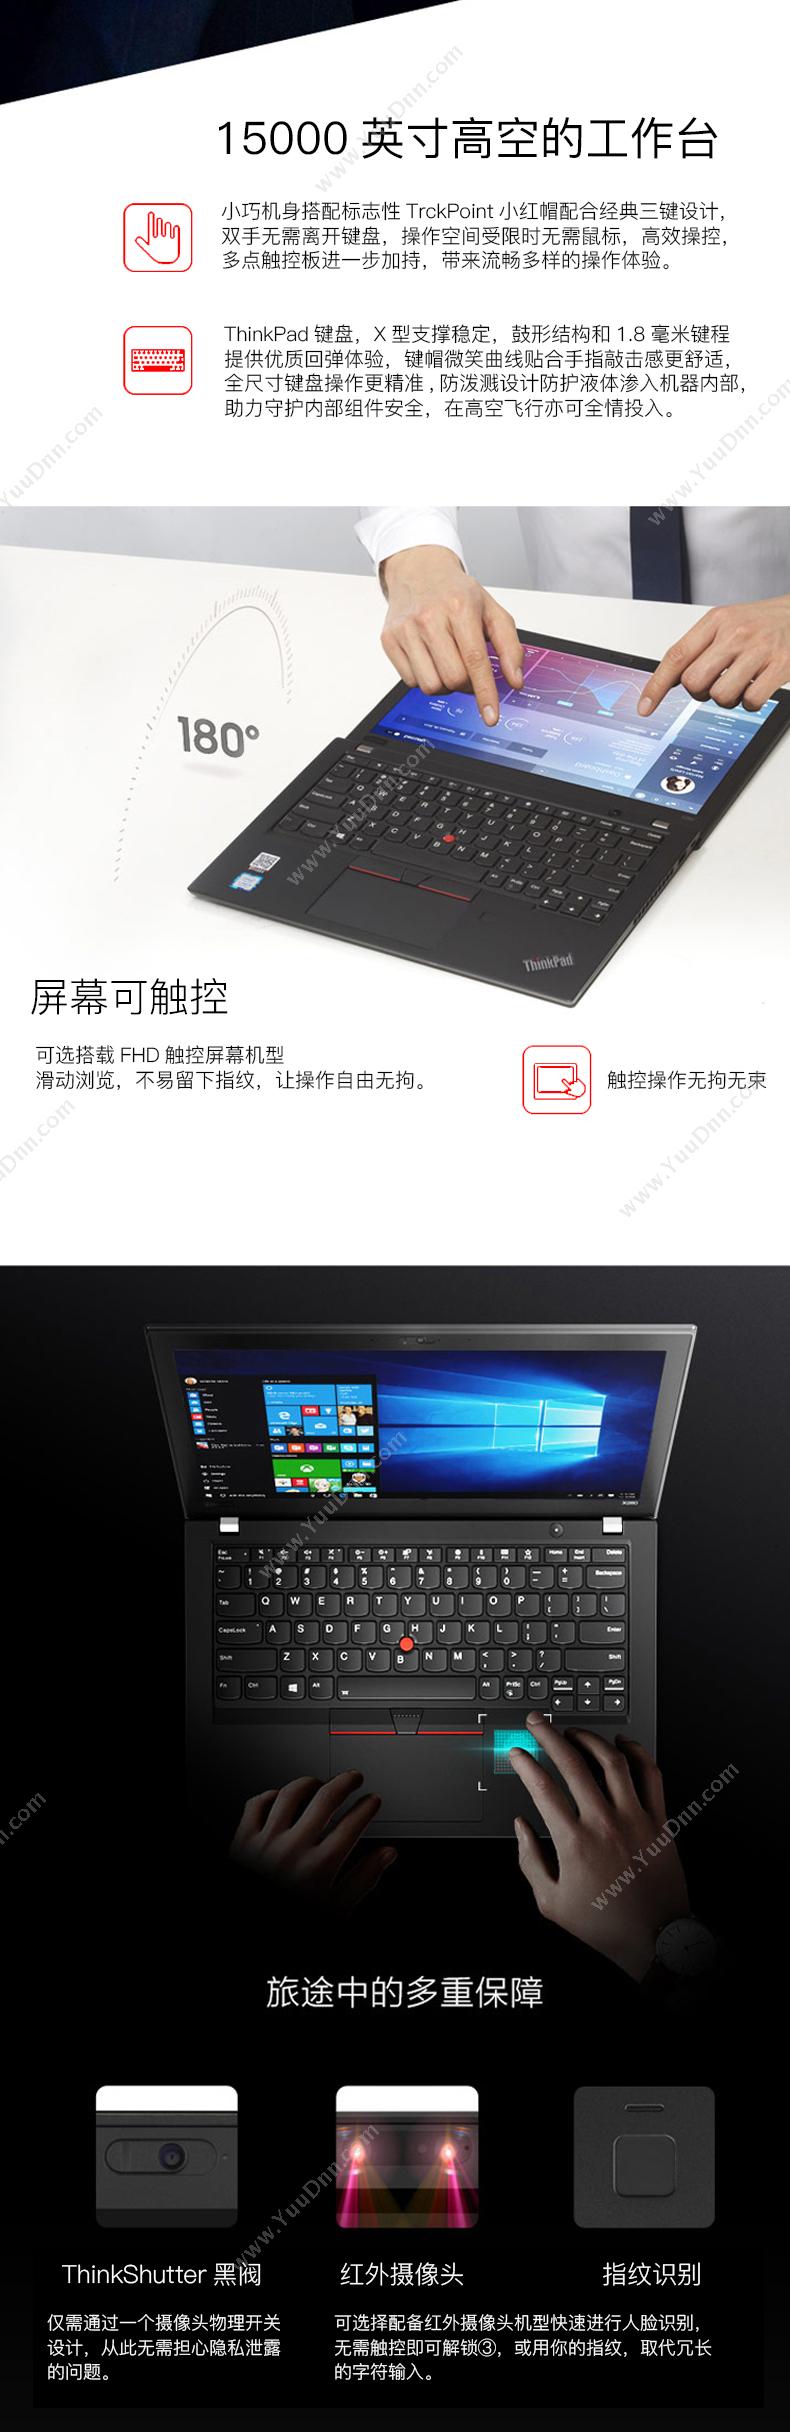 联想 Lenovo X280-053  i5-8250U（黑）  /集成/8GB/256GB/集成/无光驱/LED/12.5英寸/1年保修/DOS 笔记本